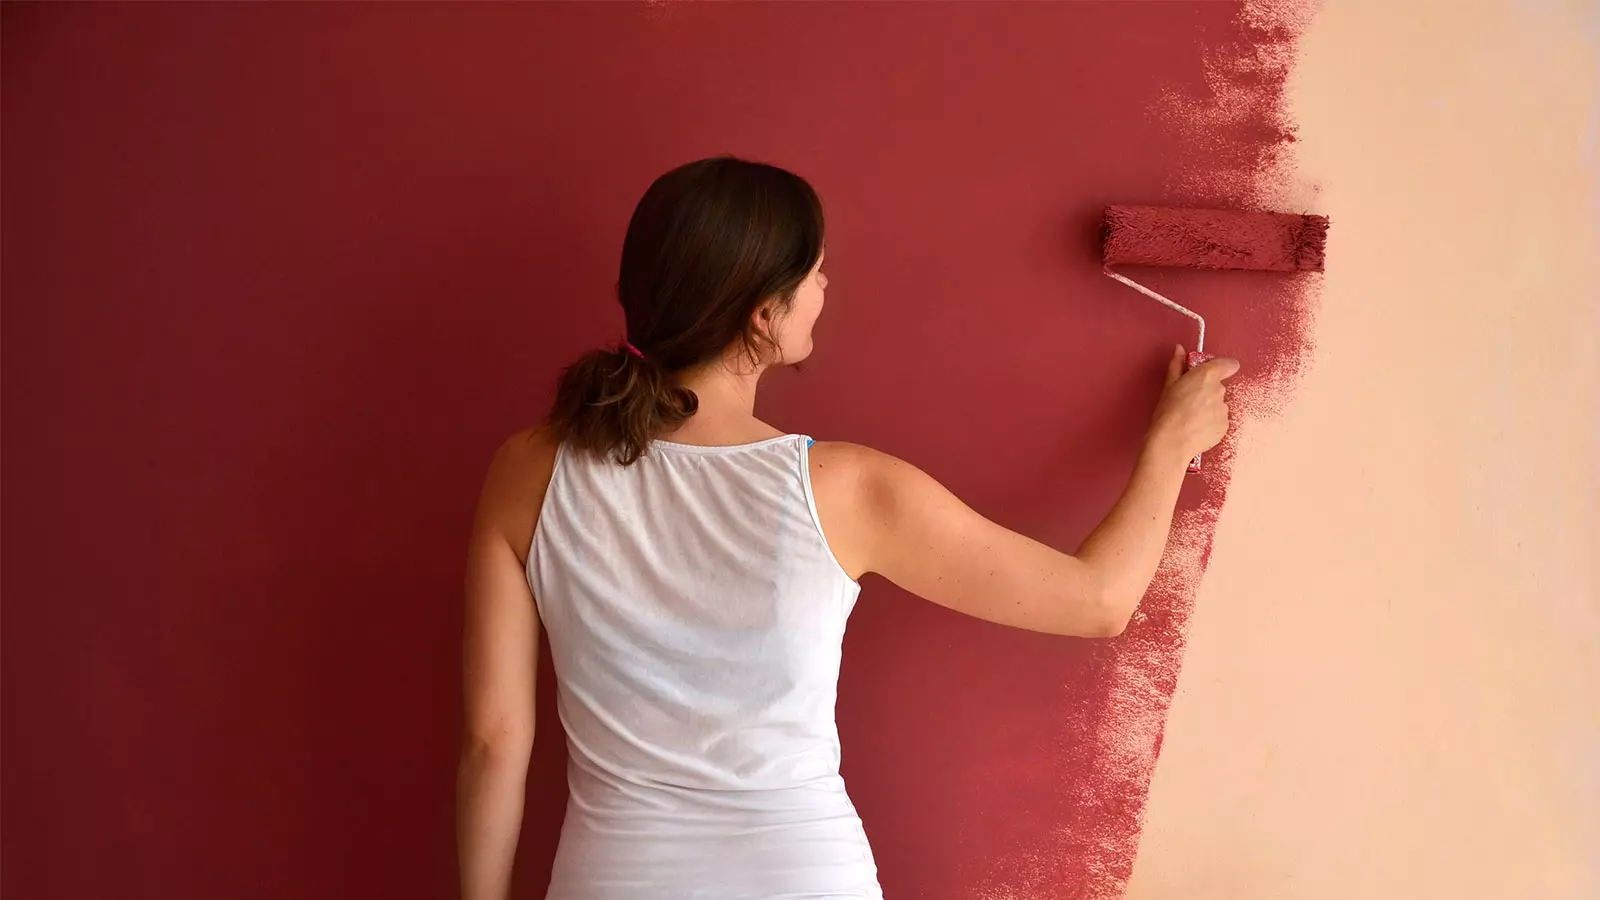 Sådan maler man væggene med en rulle uden striber? [råd